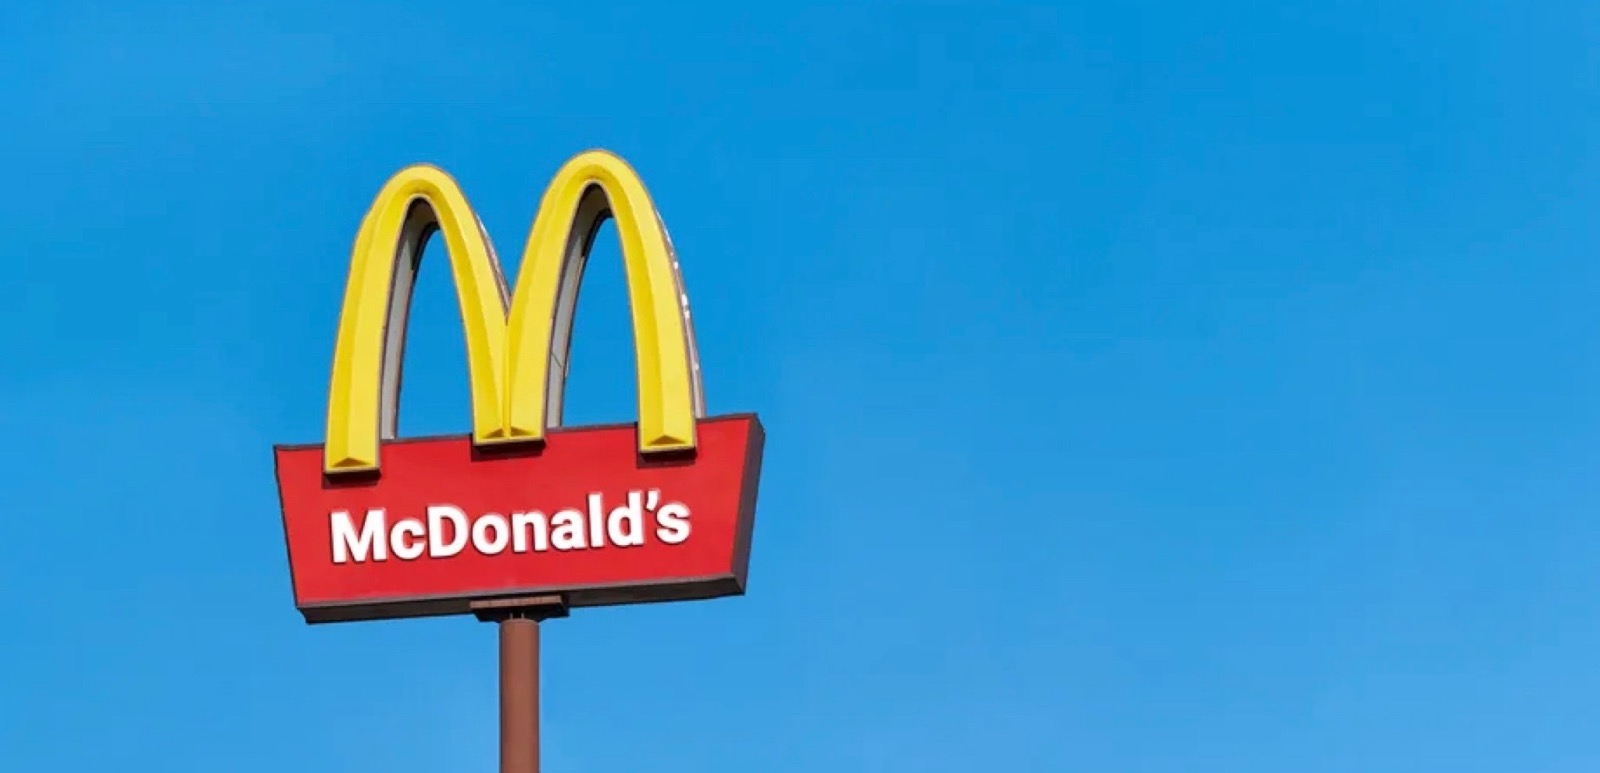 Le géant de la restauration rapide McDonald’s annonce une très mauvaise nouvelle à ses employés